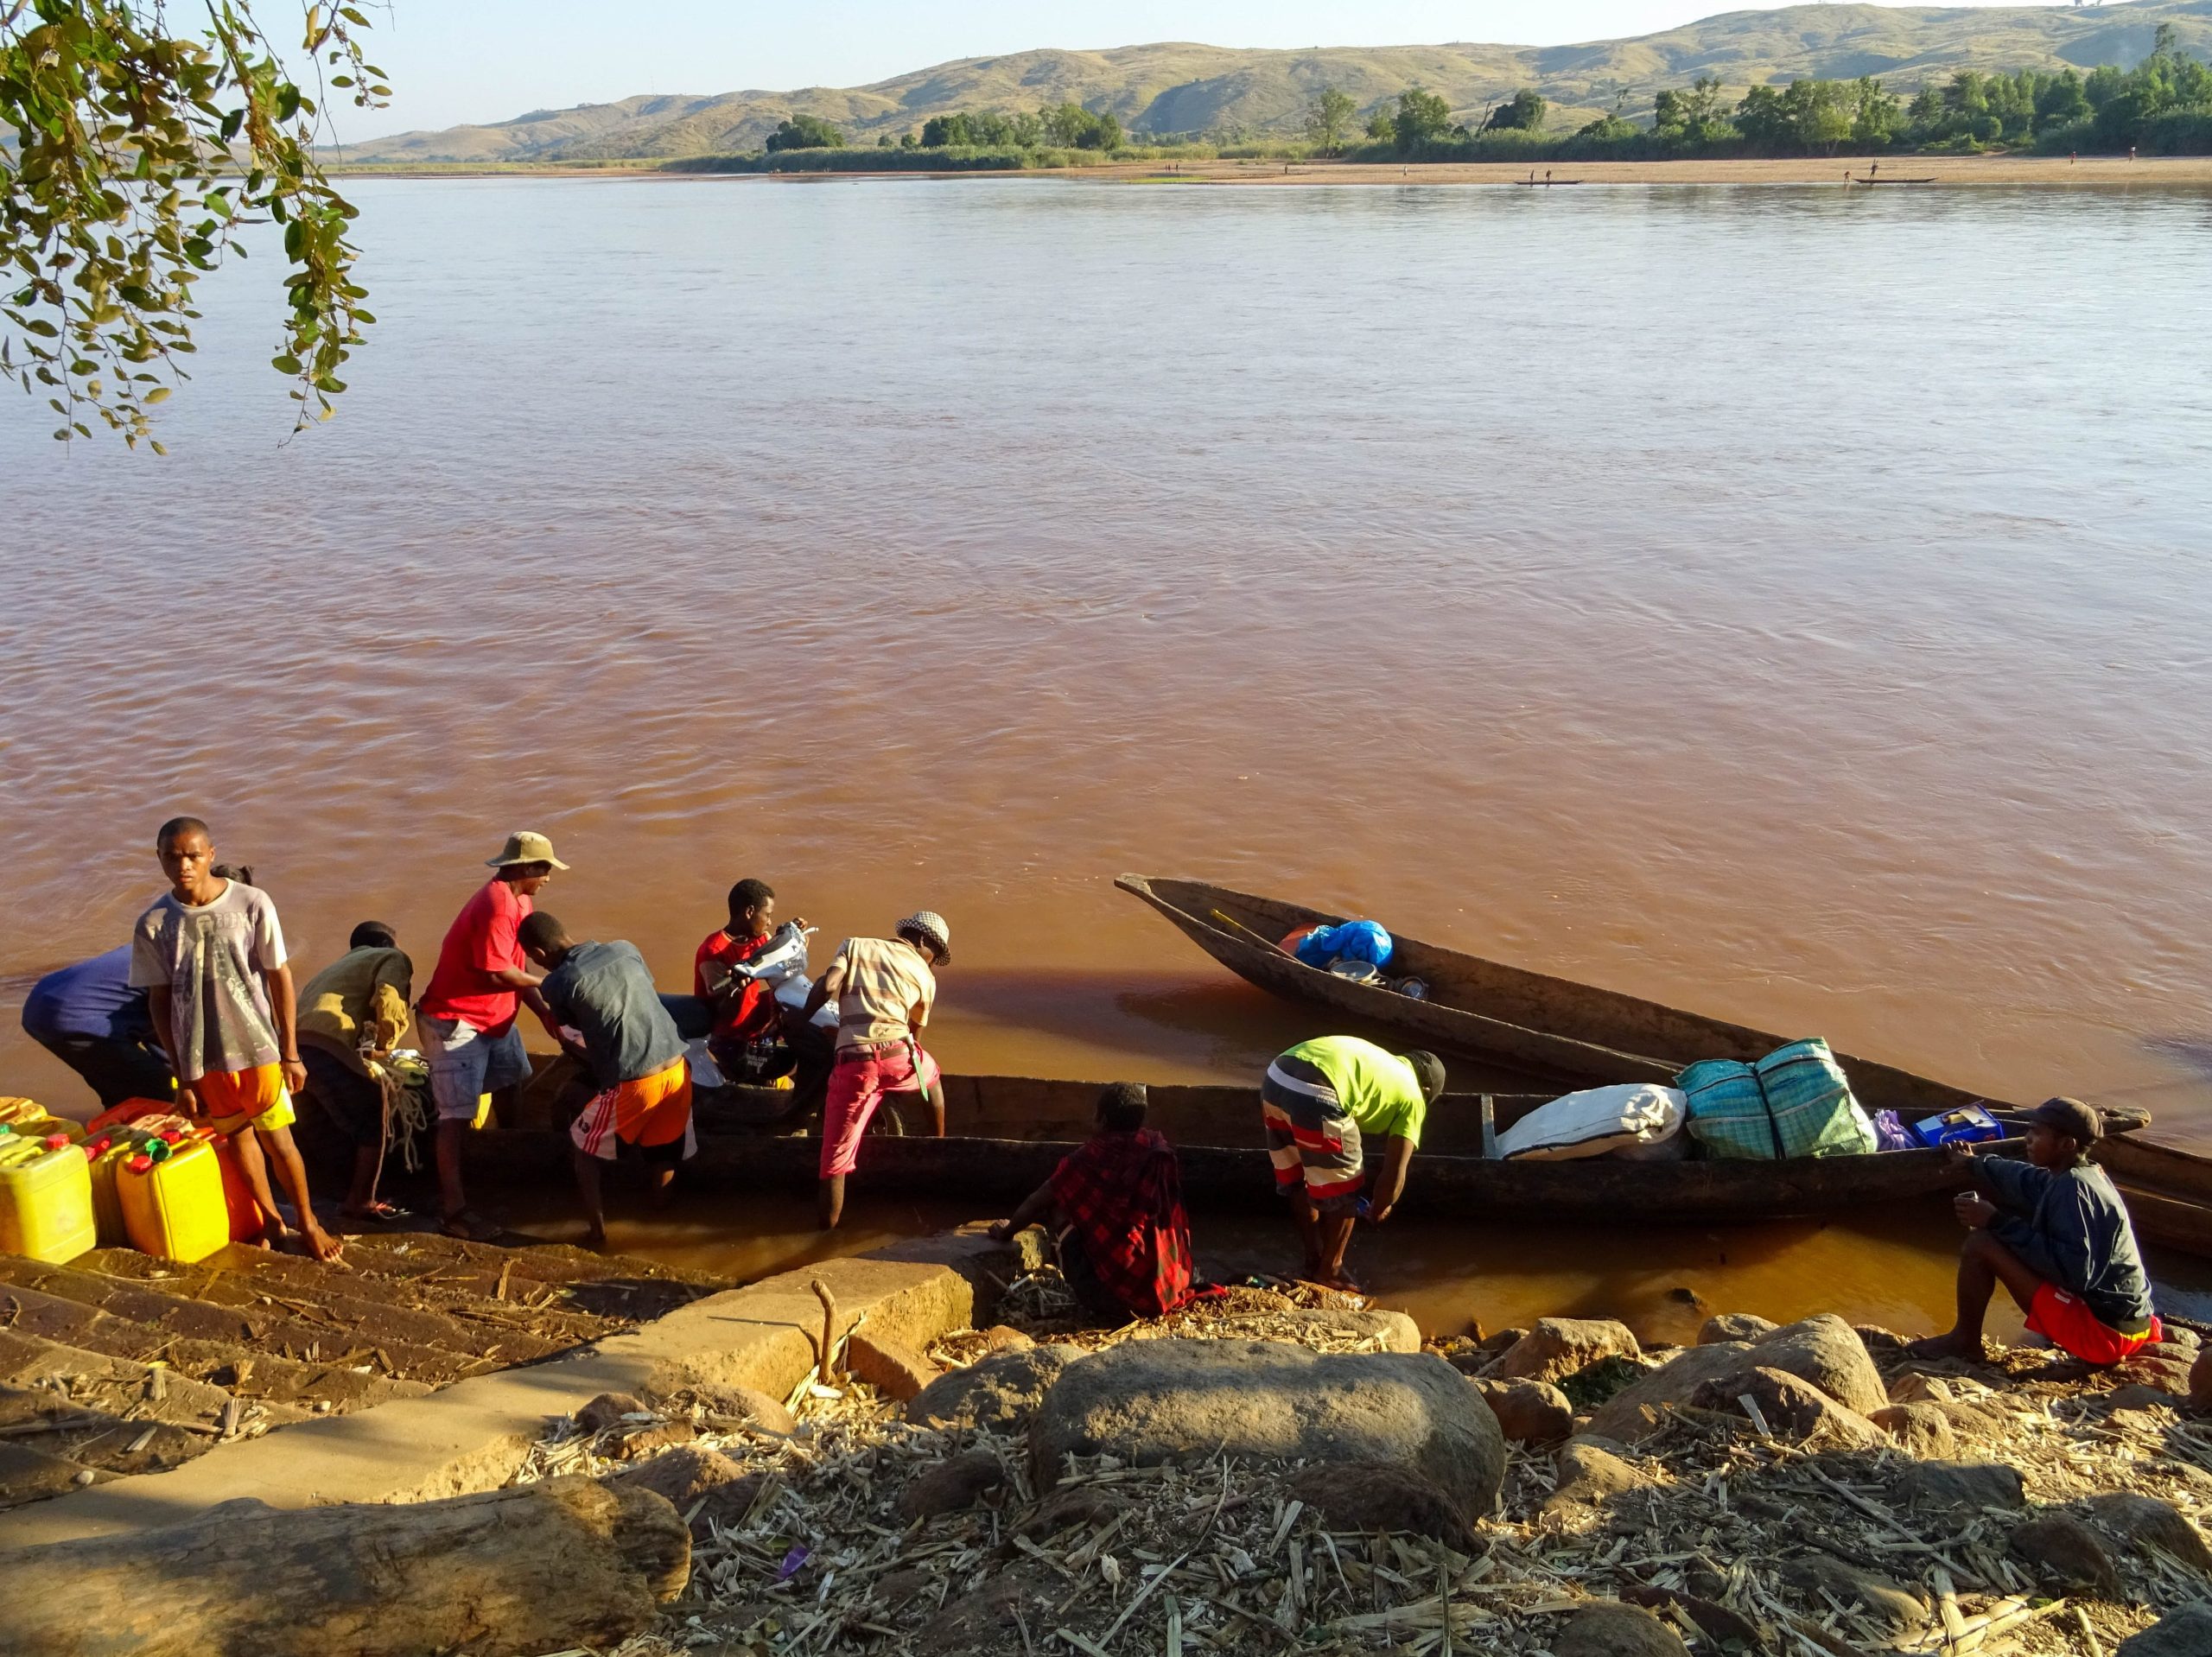 De kano wordt volgeladen voor de trip op de Tsiribihina rivier